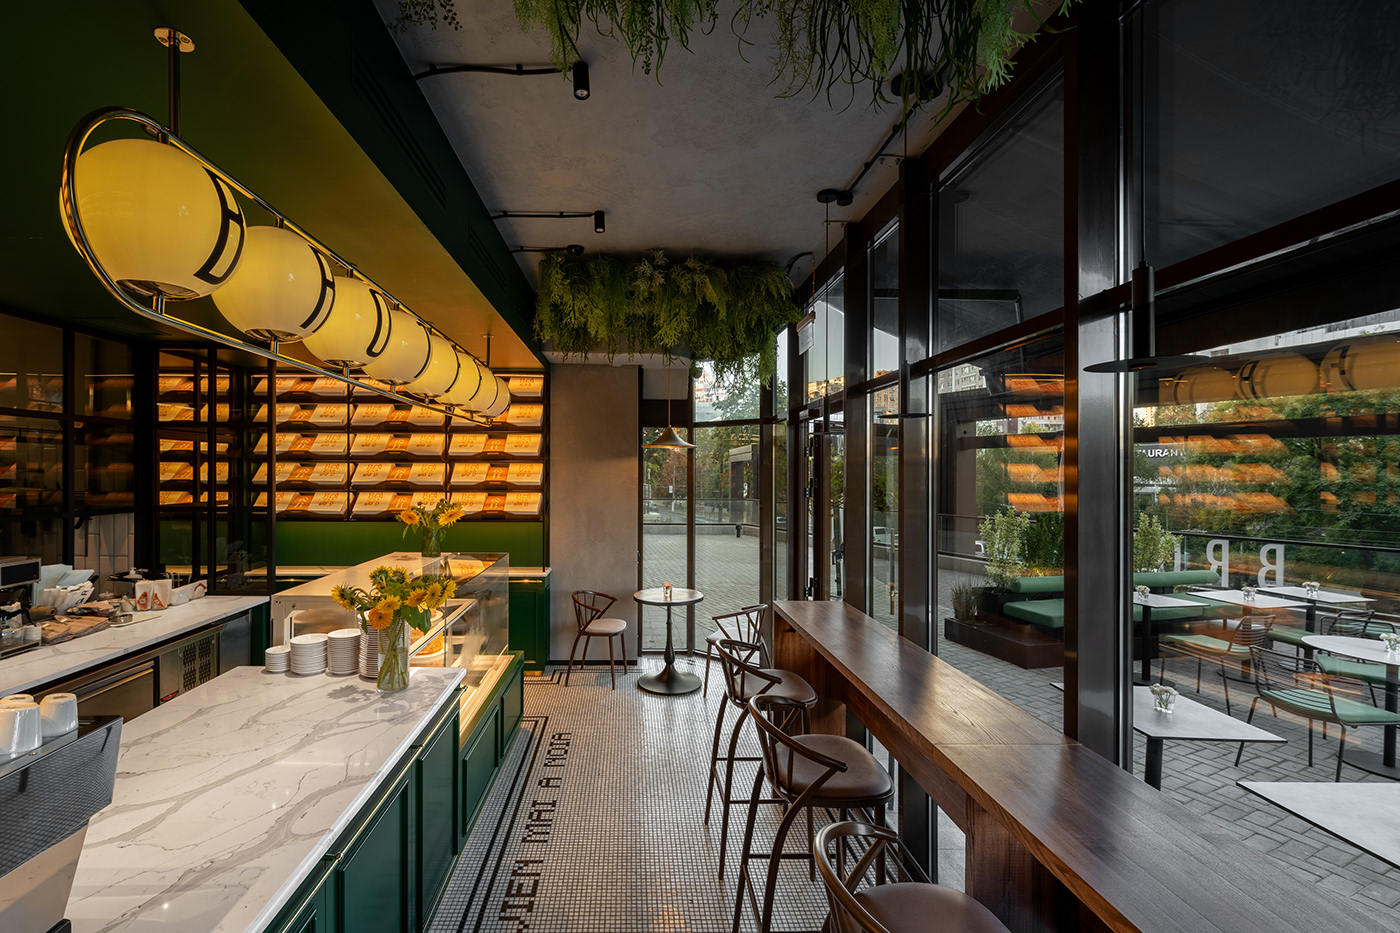 hospitality design interior design  Cafe design cafe interior bakery